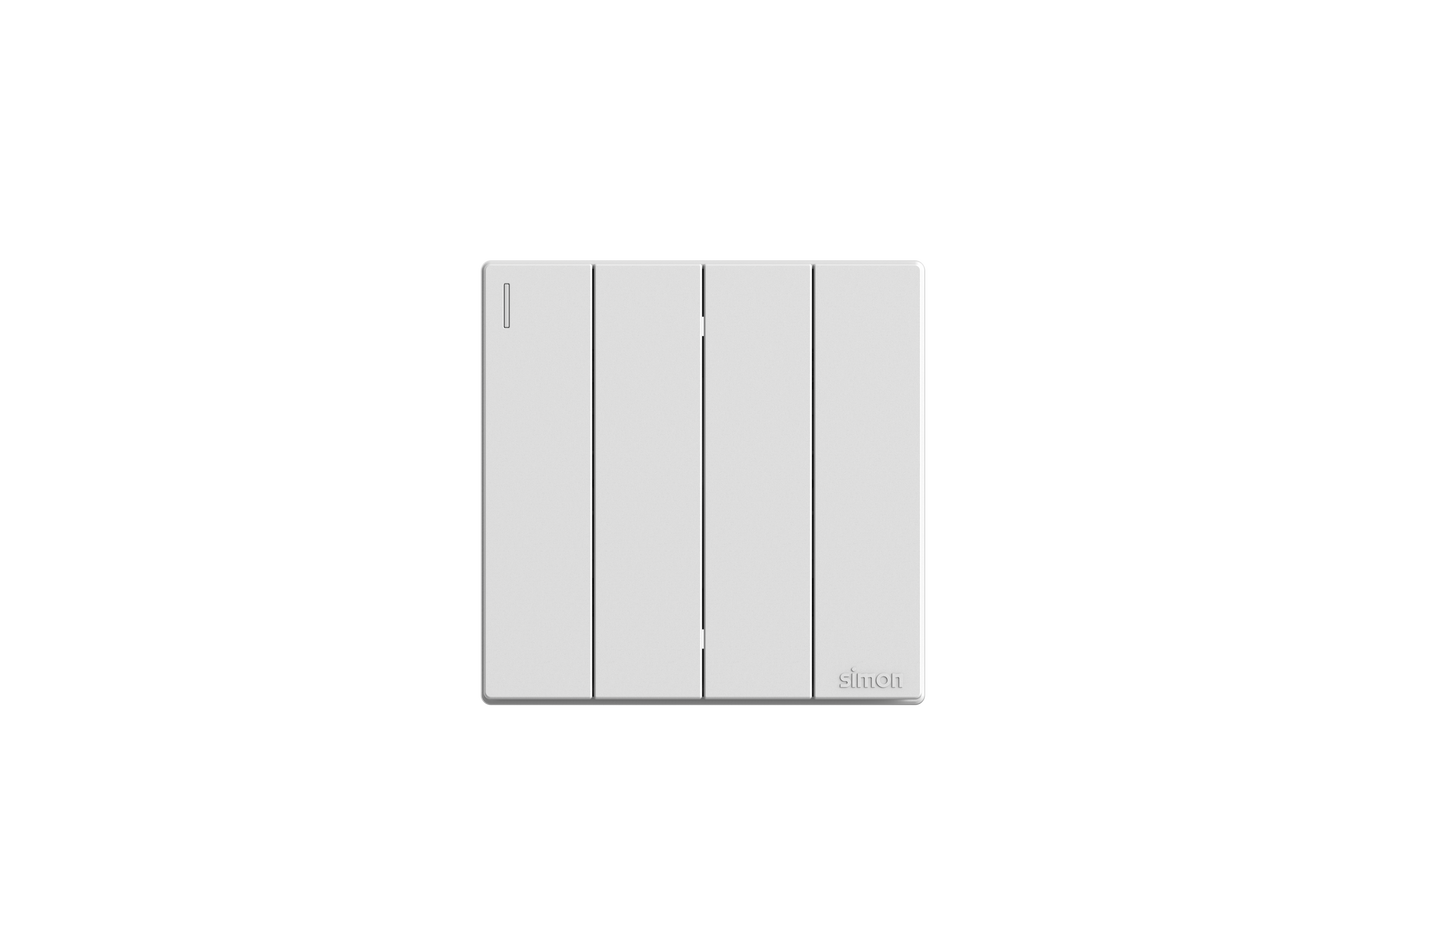 SIMON M3 Switches (White)